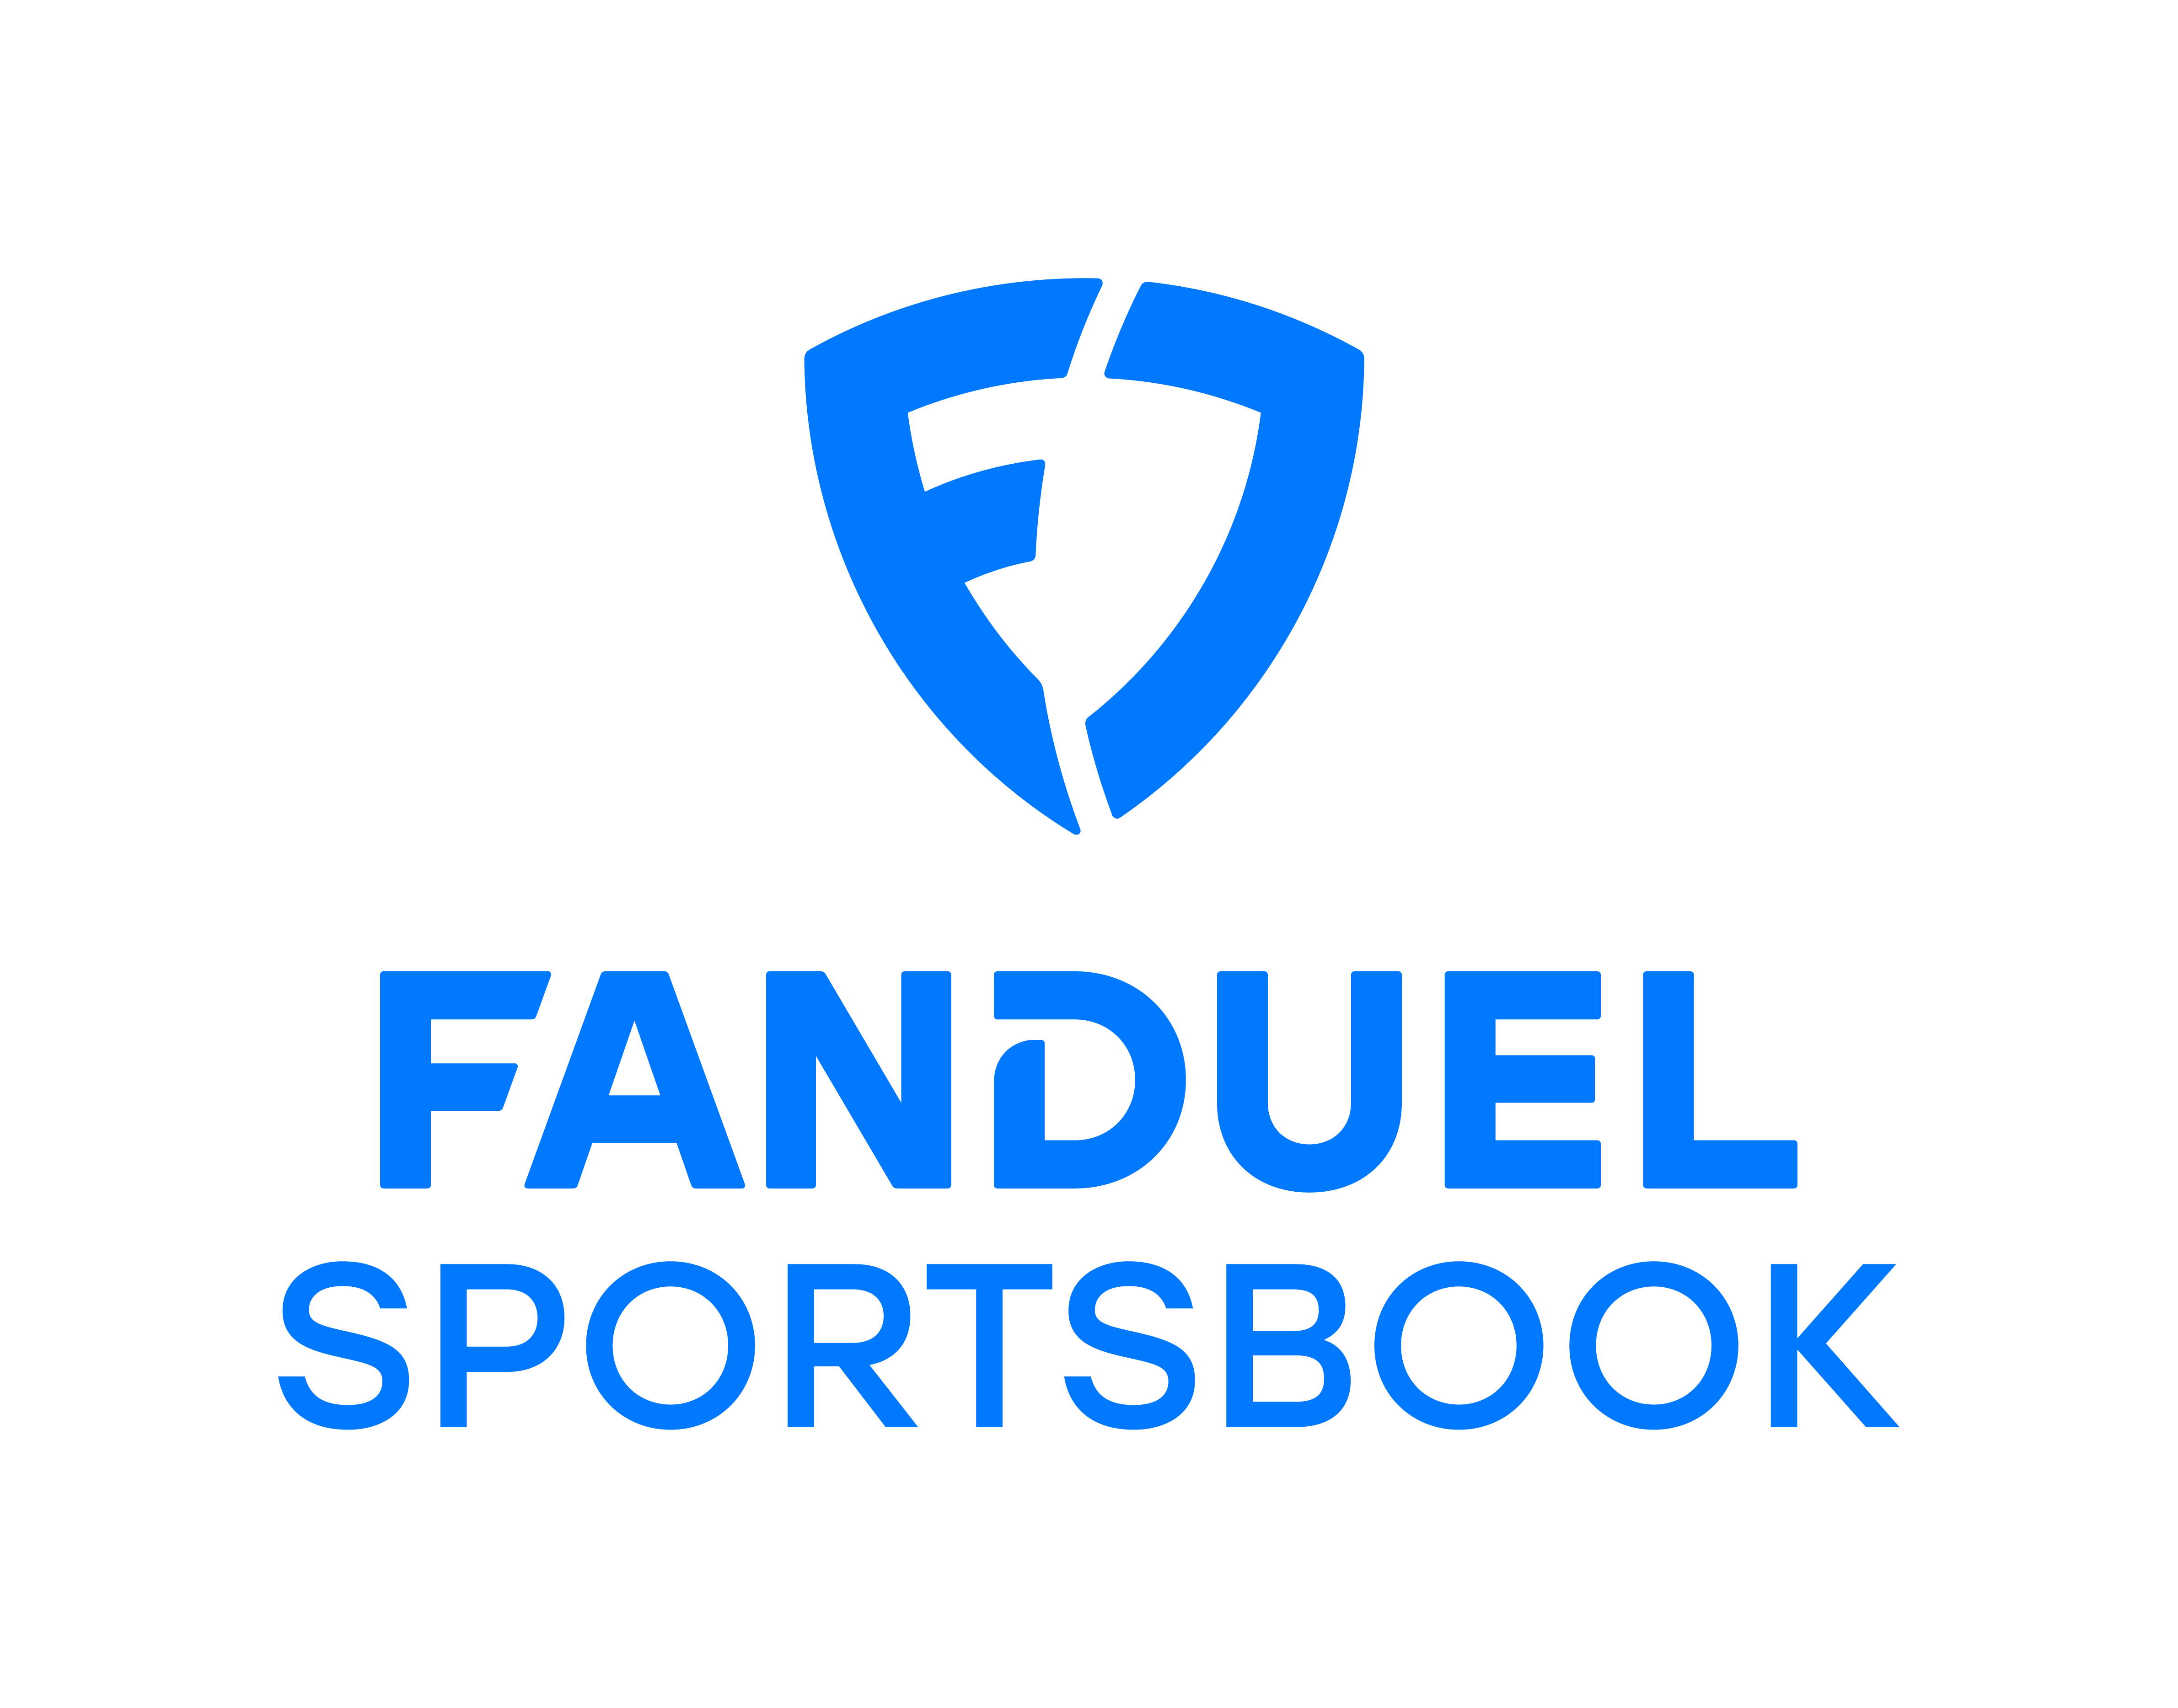 FanDuel sports book logo